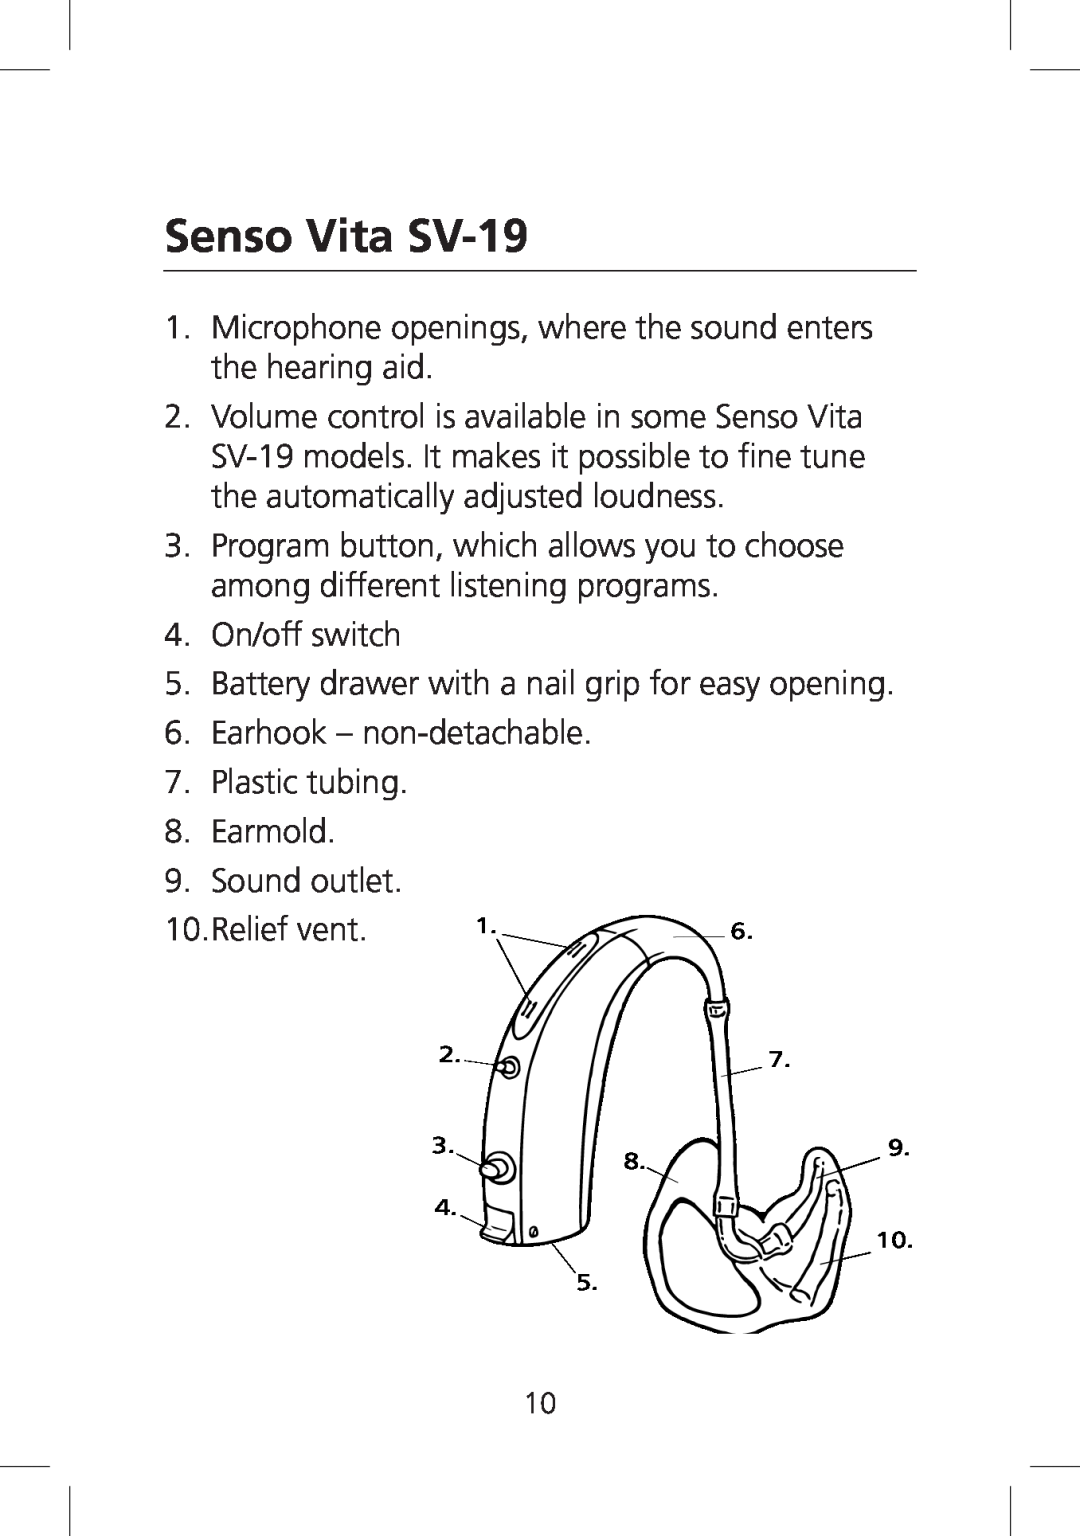 SV Sound manual Senso Vita SV-19 